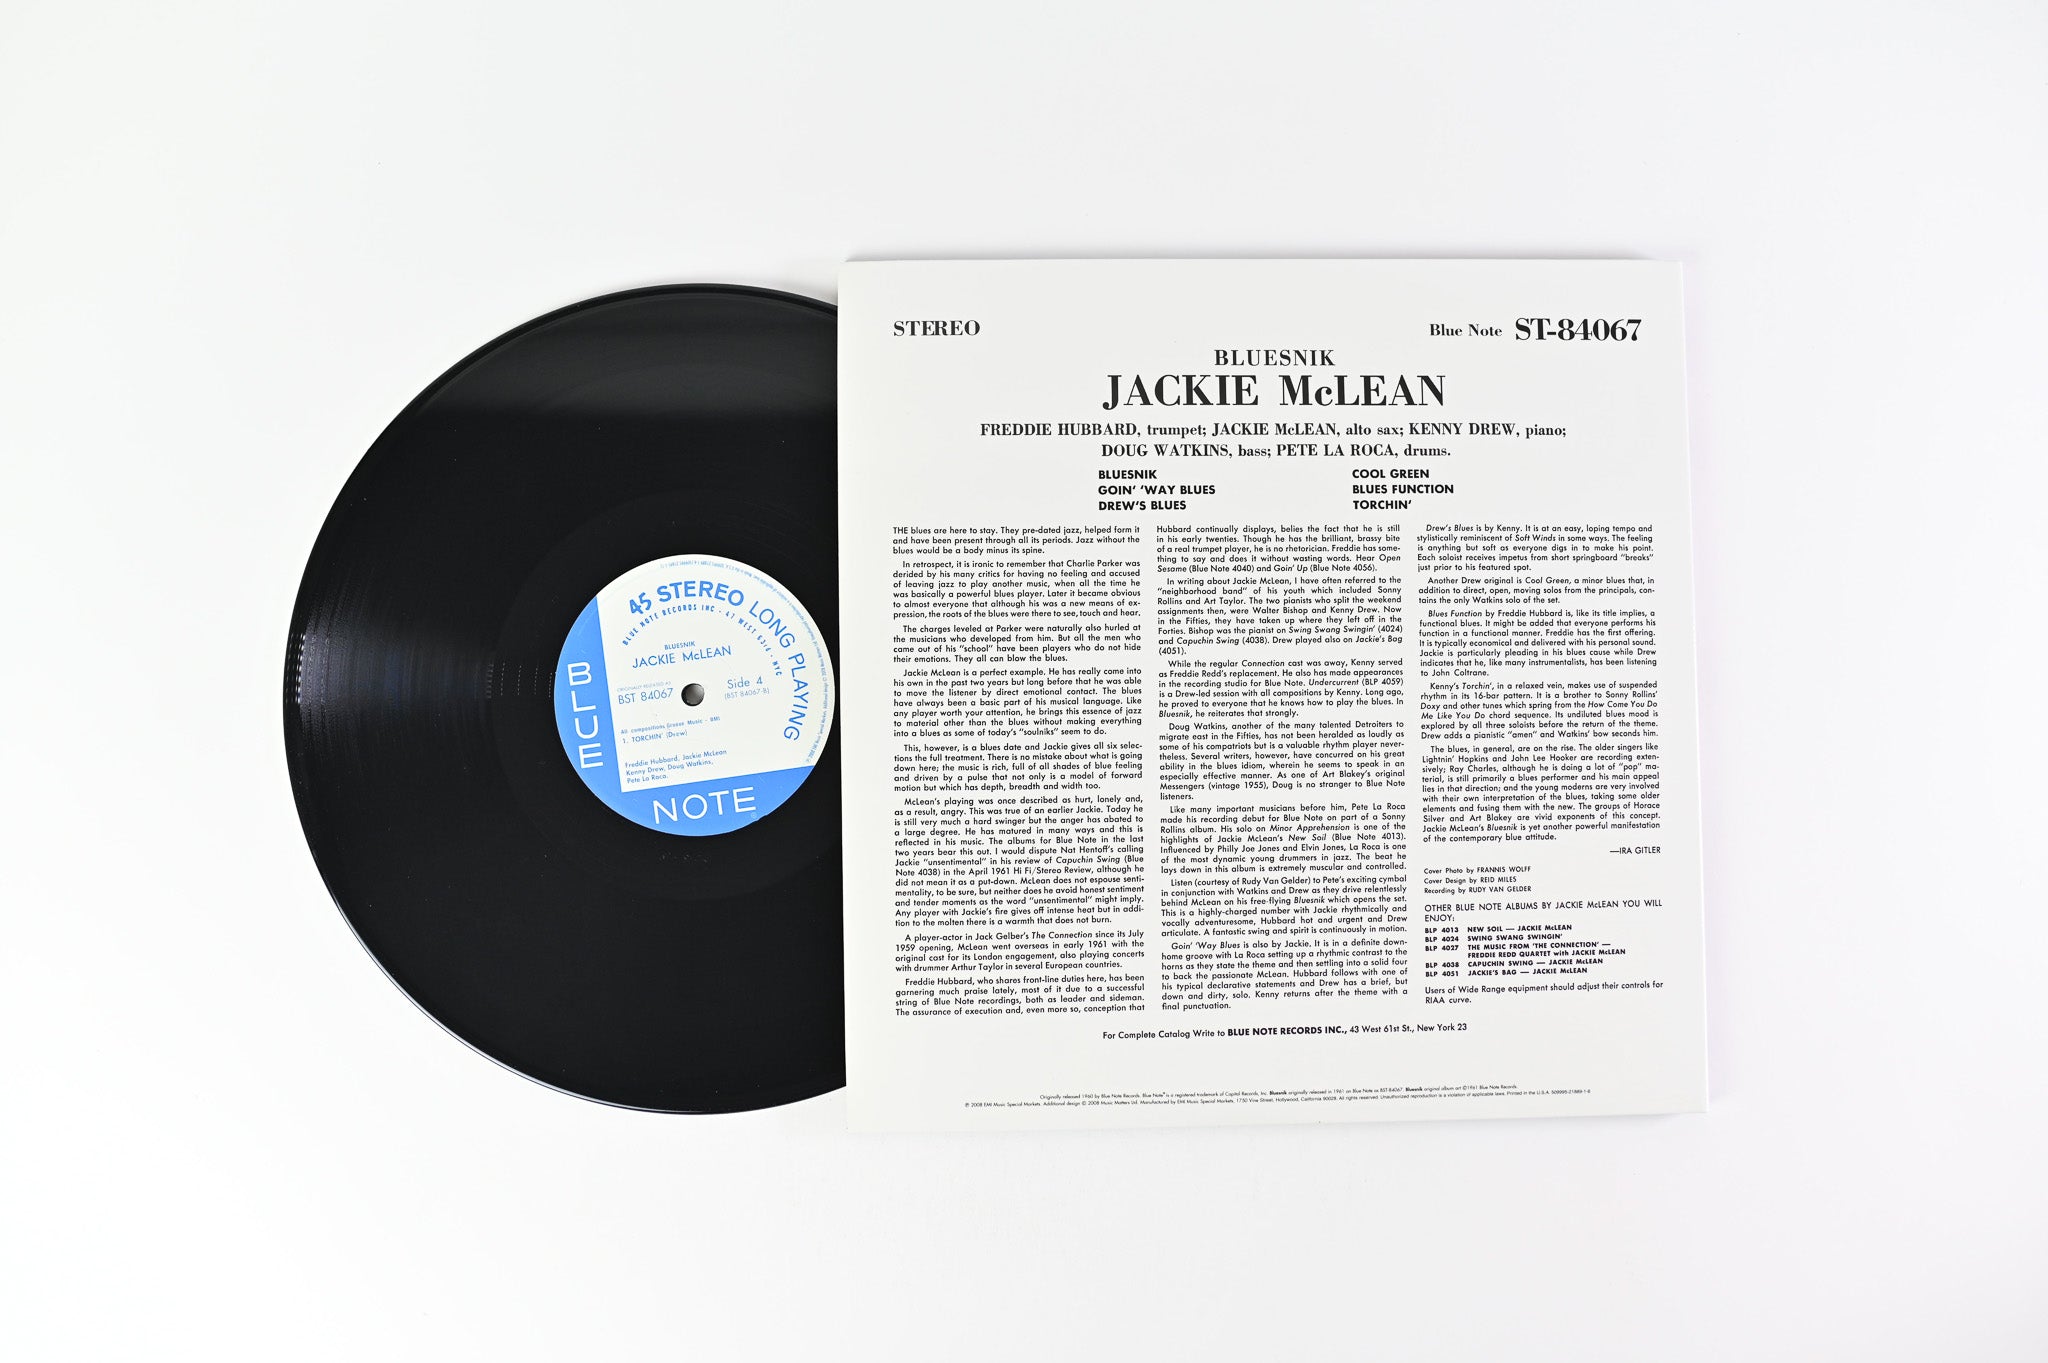 Jackie McLean - Bluesnik on Blue Note Ltd Music Matters 45 RPM Reissue